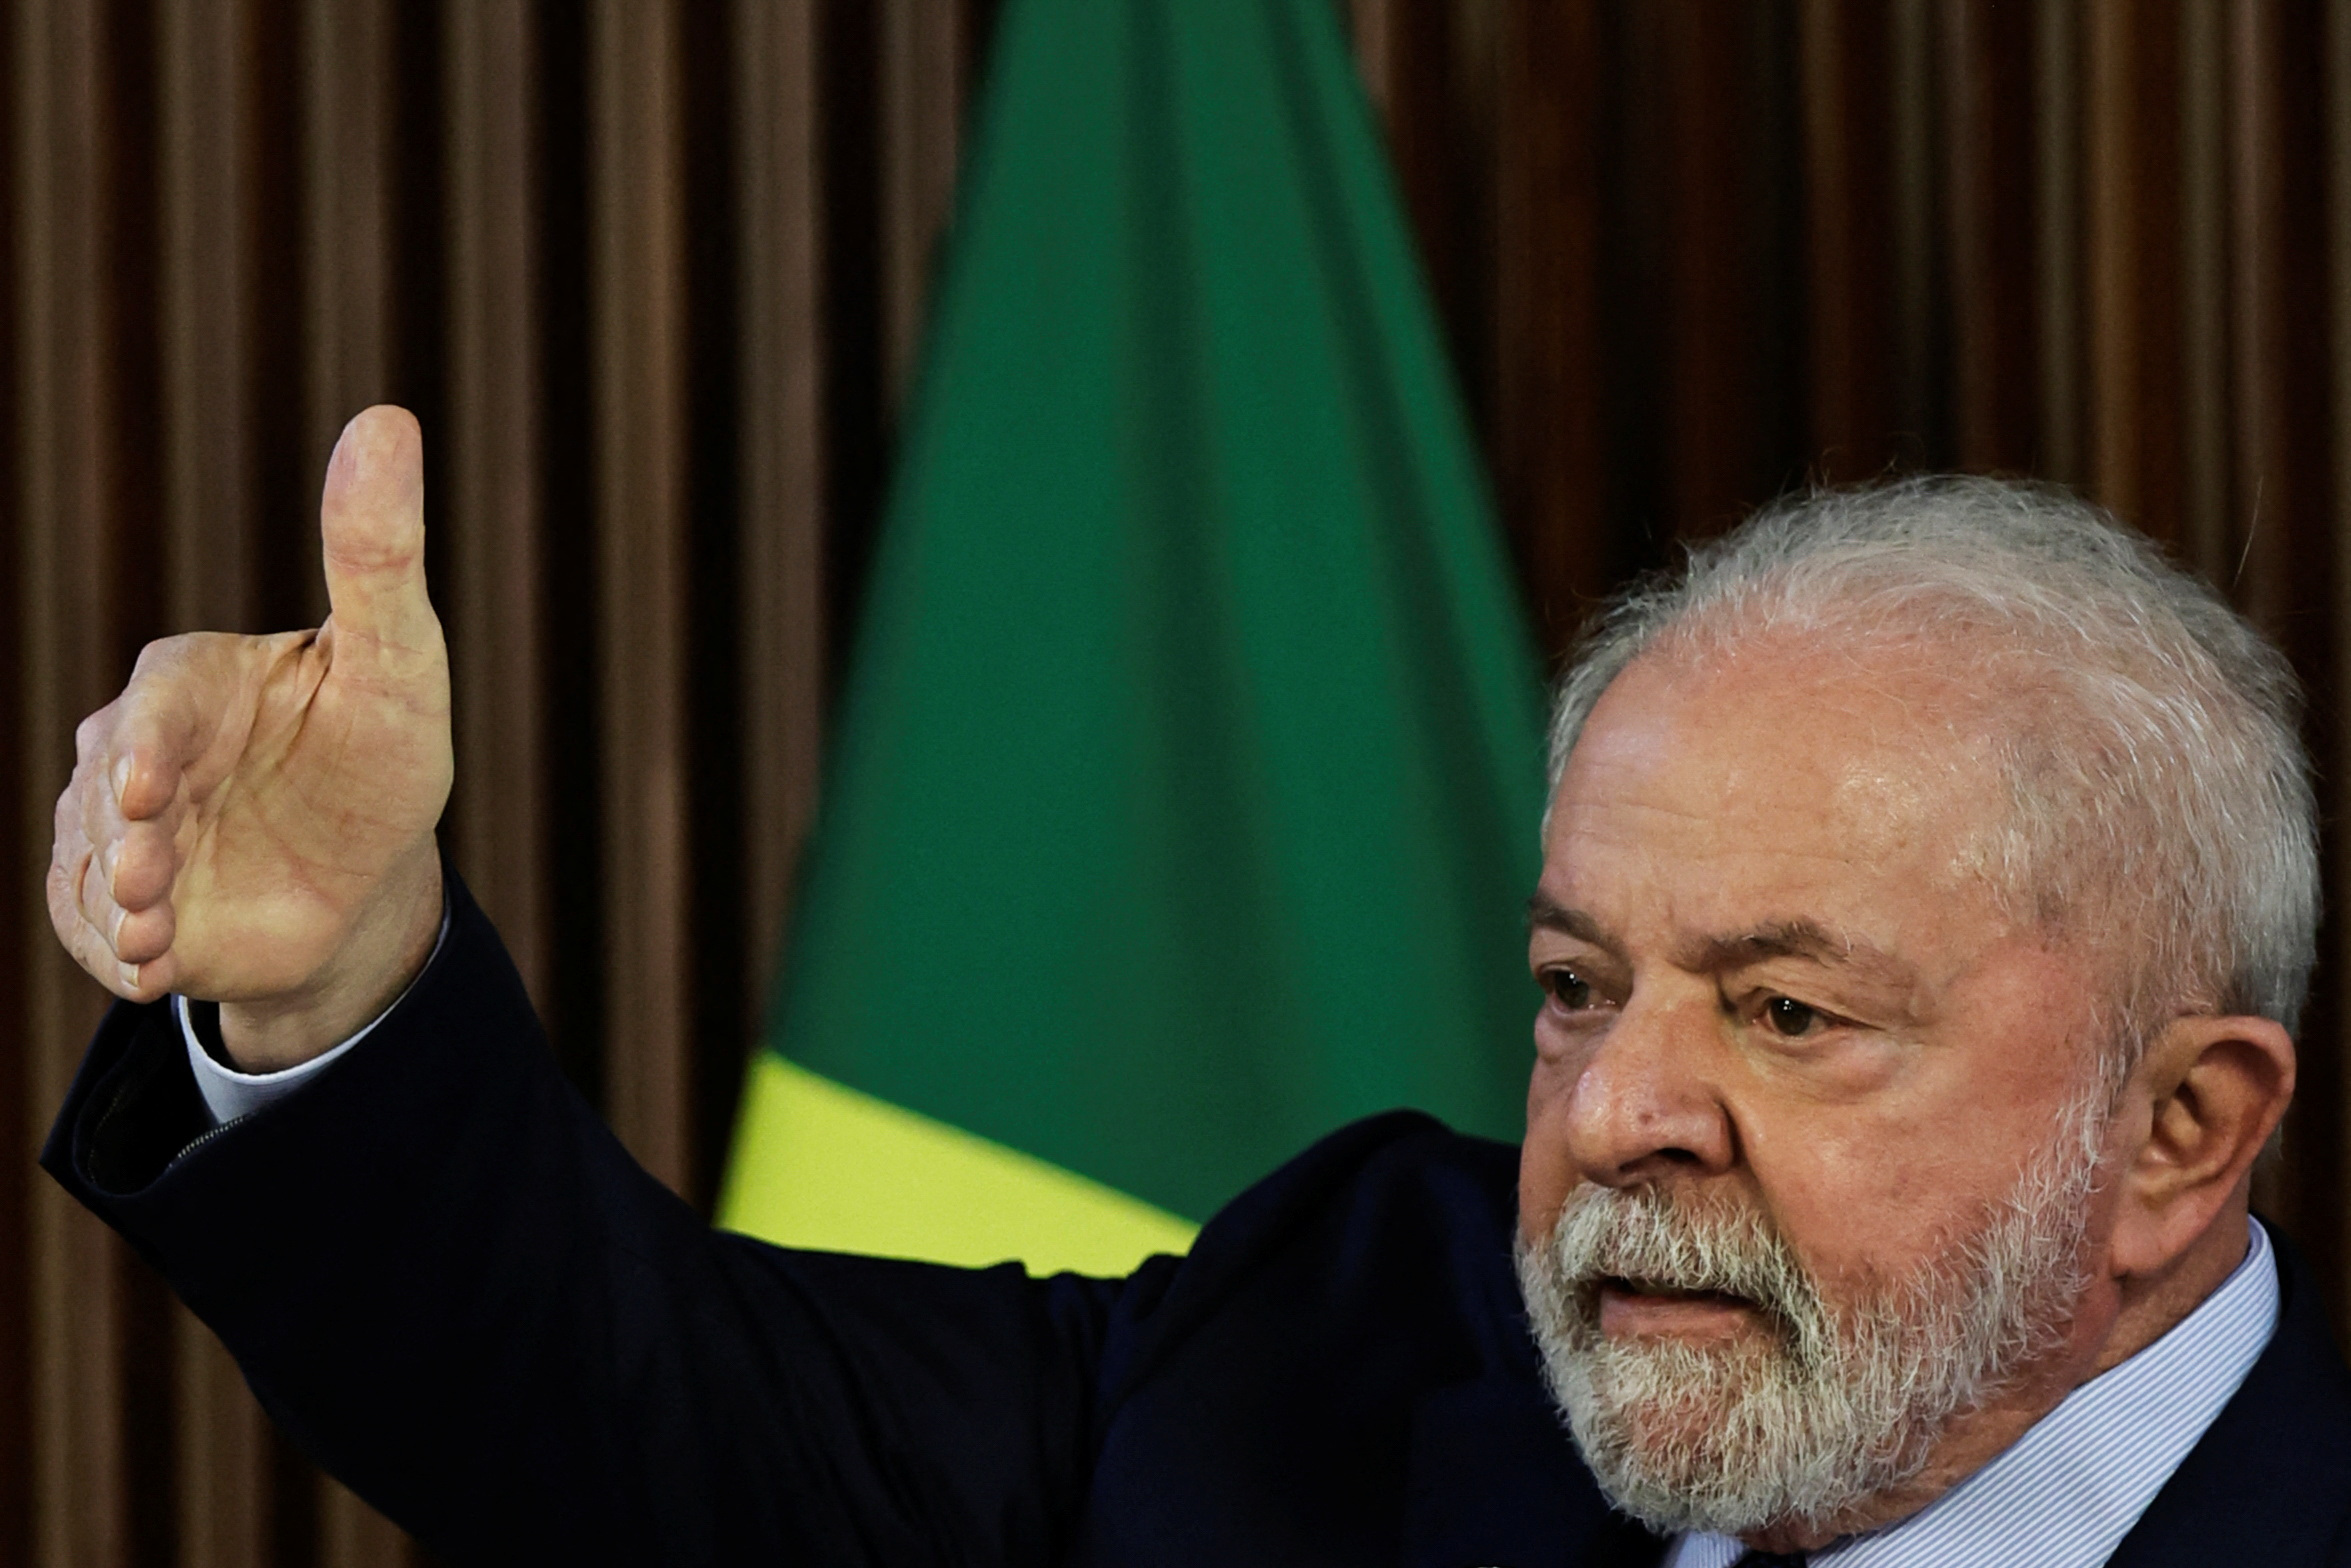 Los primeros 30 días de gobierno de Lula: resistencia de la democracia, incertidumbre en la economía y ambigüedad en política exterior